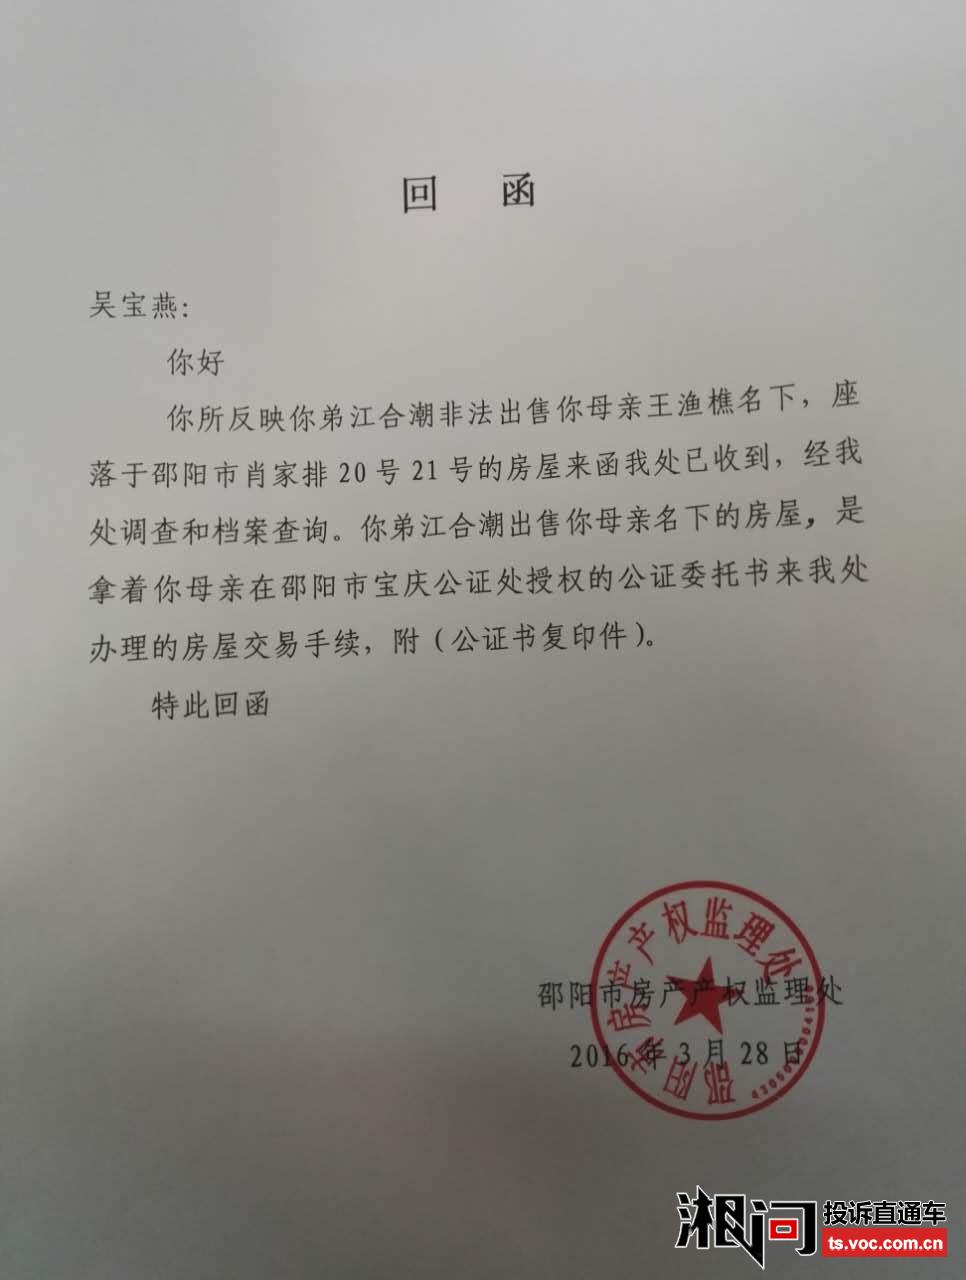 邵阳市国土局接受伪造公证书办理了房产和土地